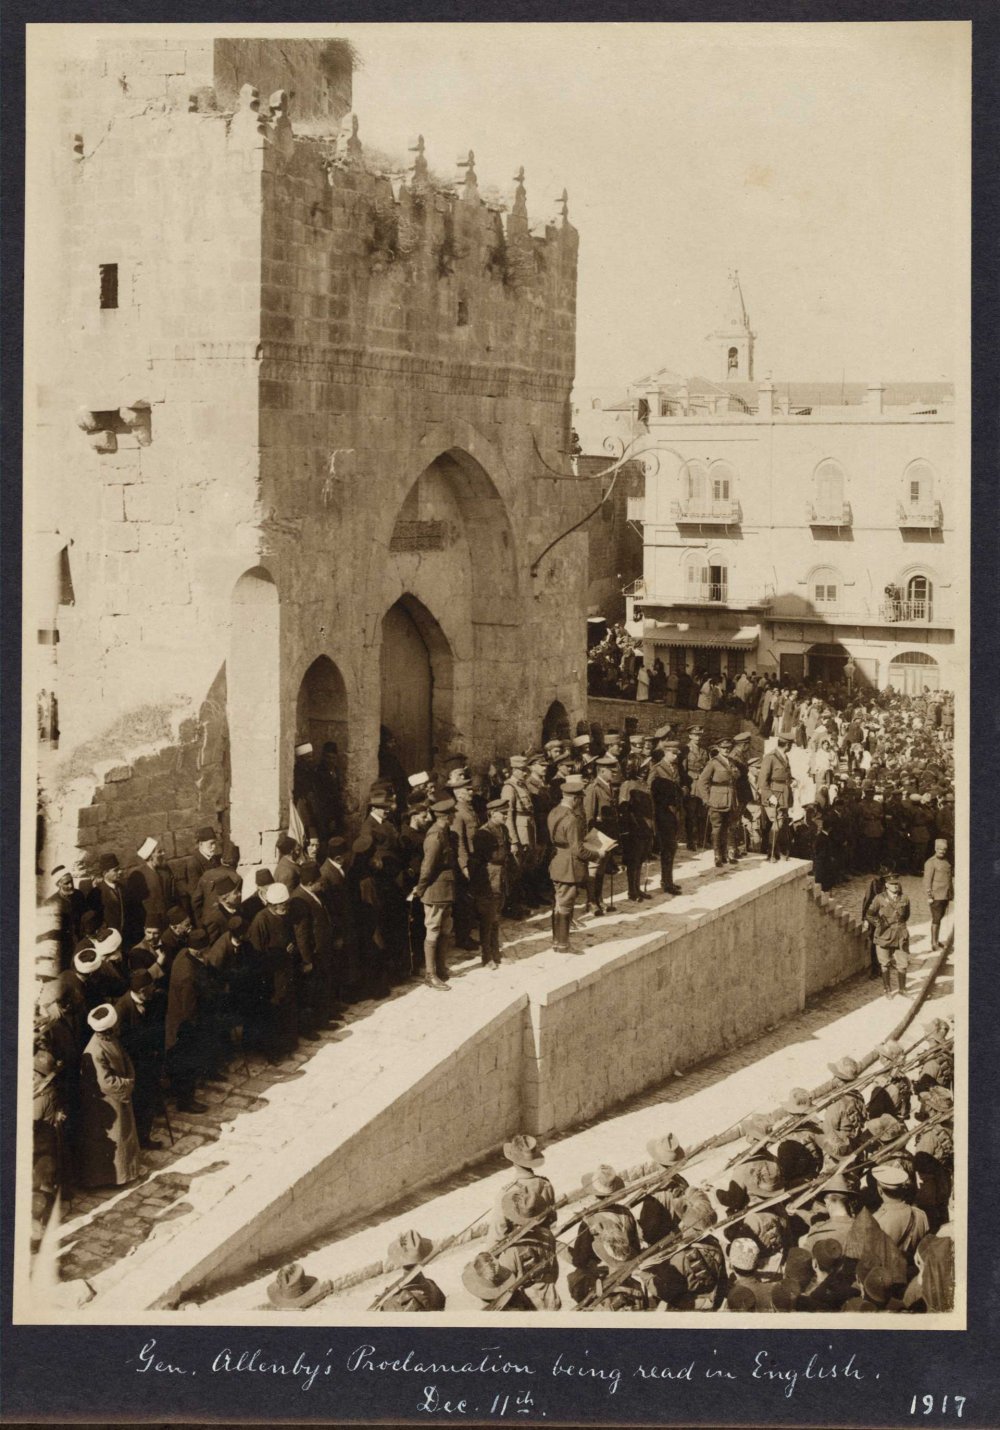 British General Edmund Allenby declares martial law in Jerusalem, December 11, 1917